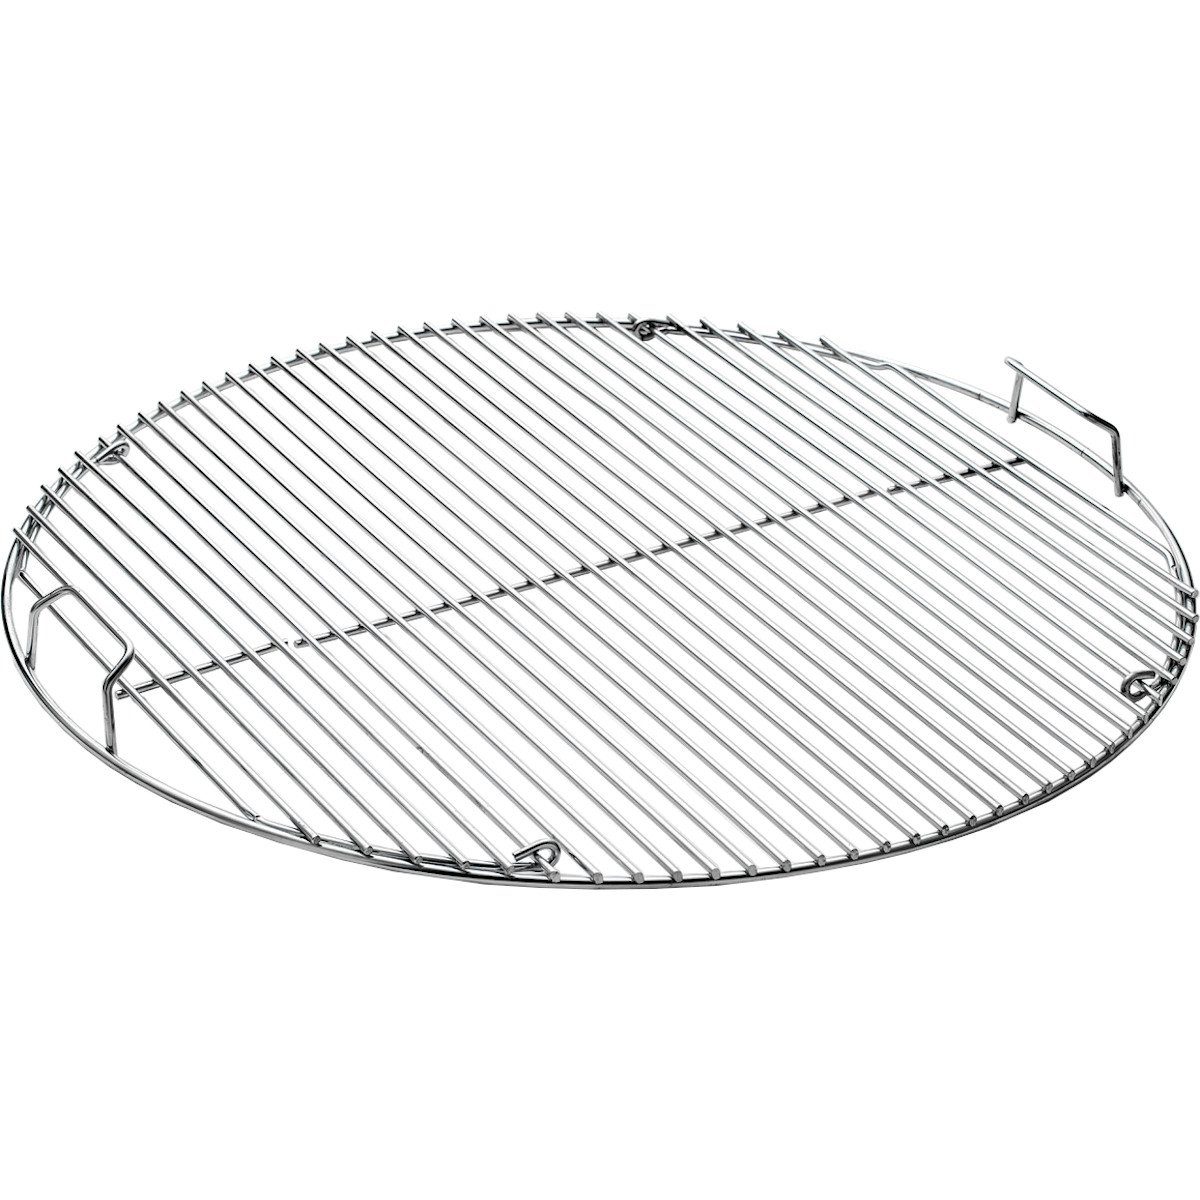 Proregal Grillrost klappbarer Grillrost rund für Holzkohlegrills ø 57 cm,  Edelstahl, Für die Kohlebefüllung aufklappbar